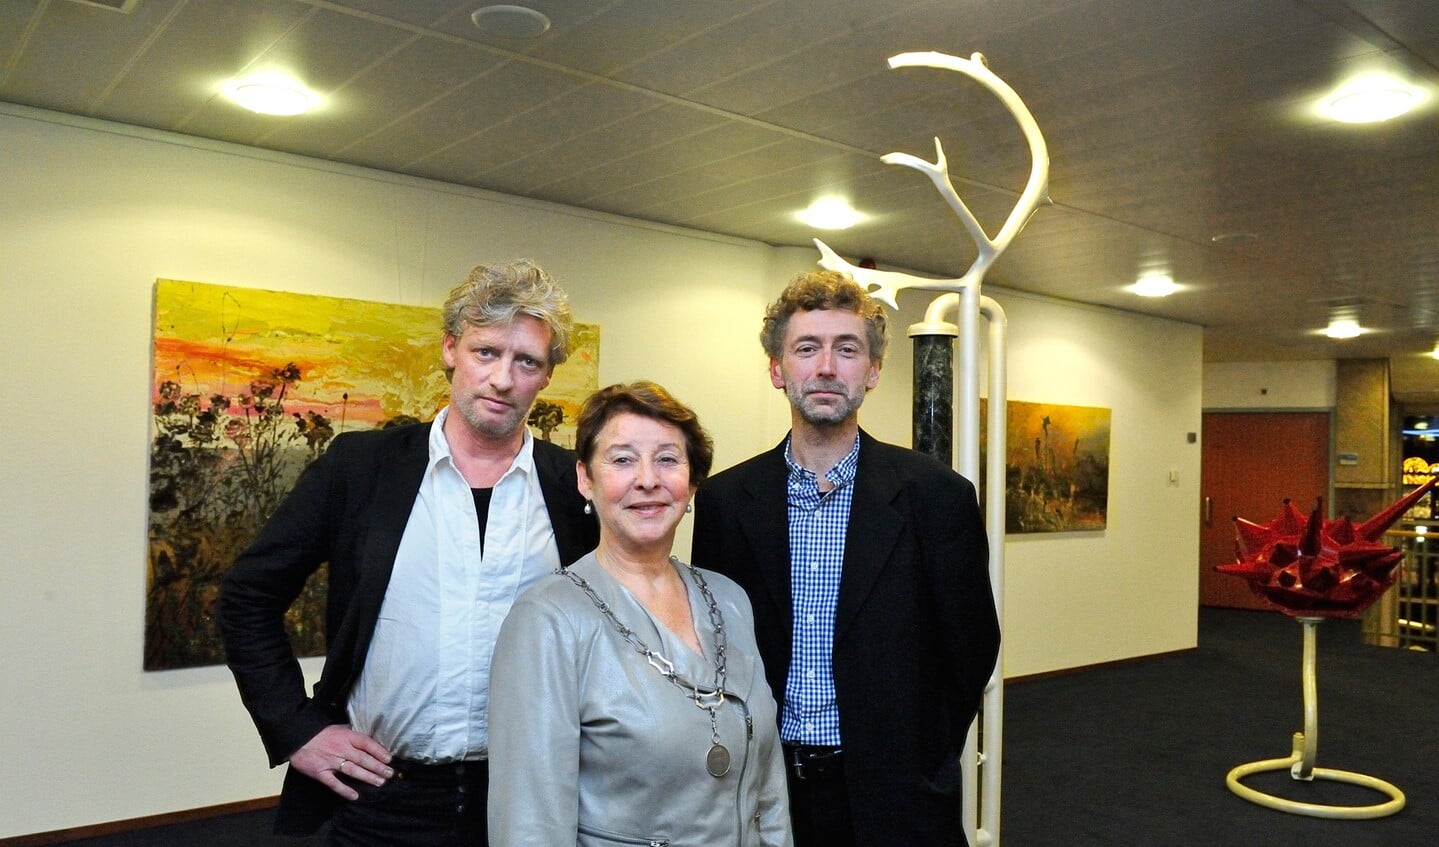 Burgemeester Koopmanschap met (links) kunstschilder Paul Smulders en rechts beeldhouwer Willem Harbers